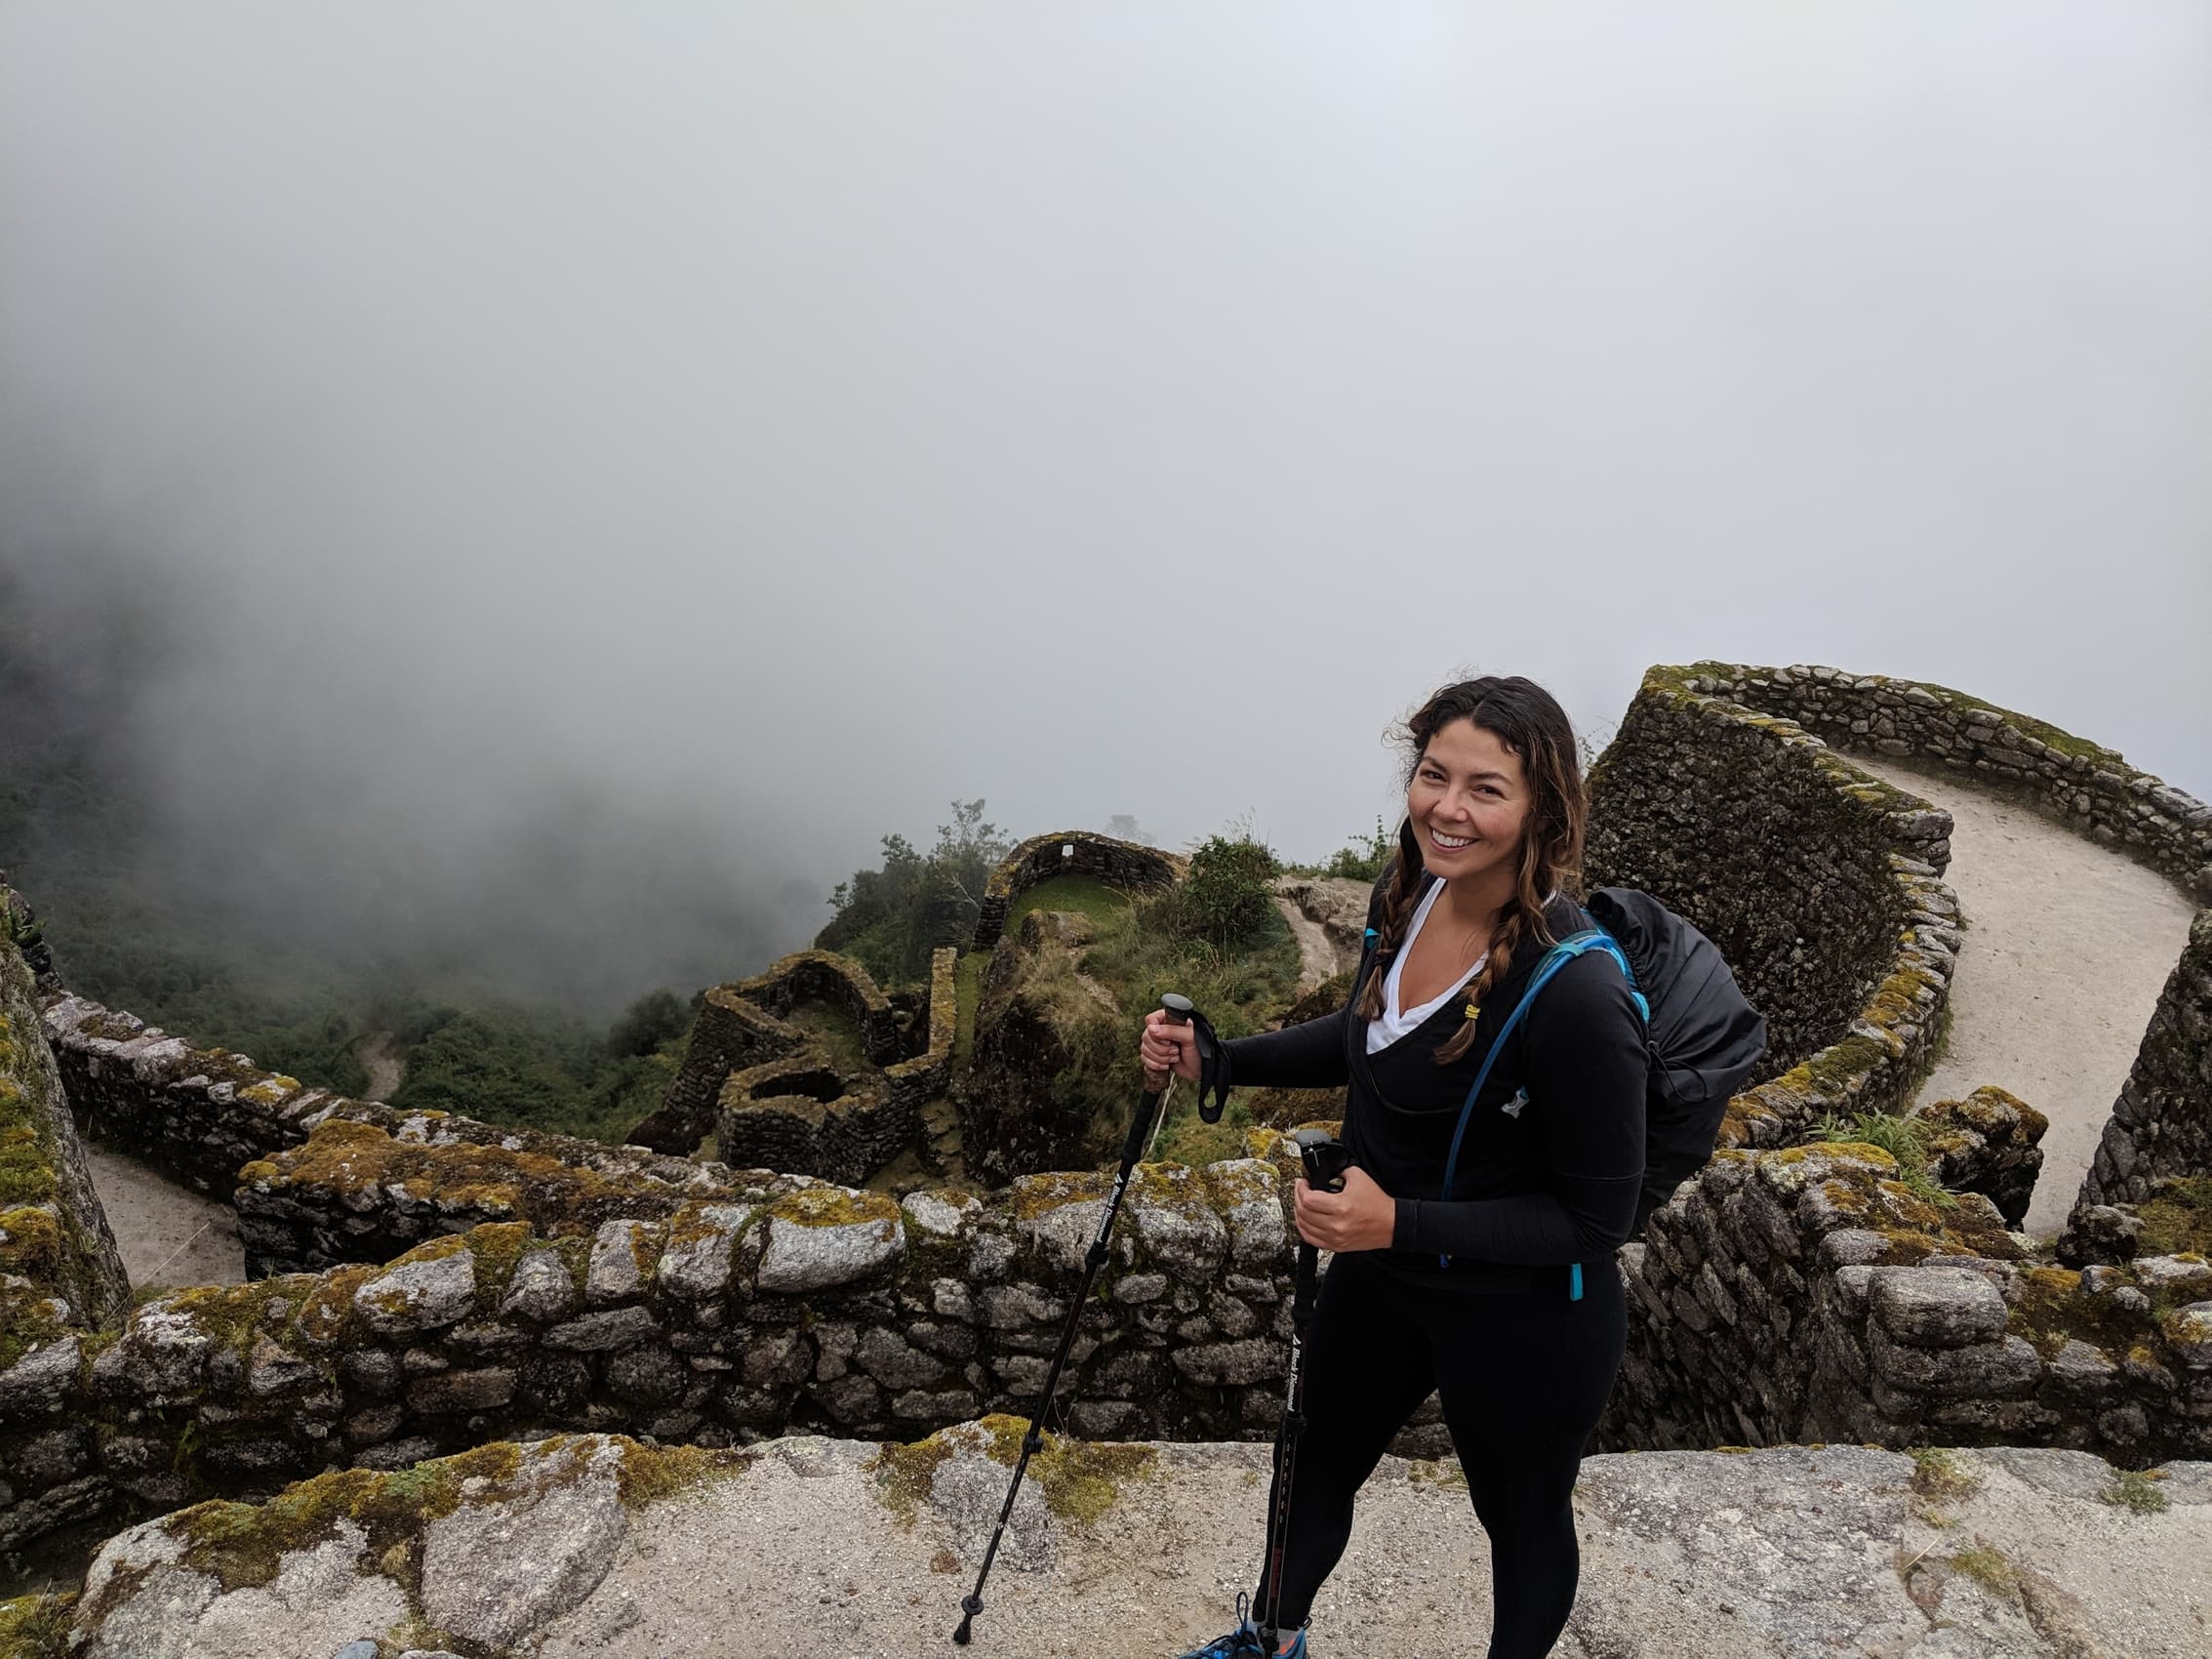 Beth hiking the Inca Trail in Peru